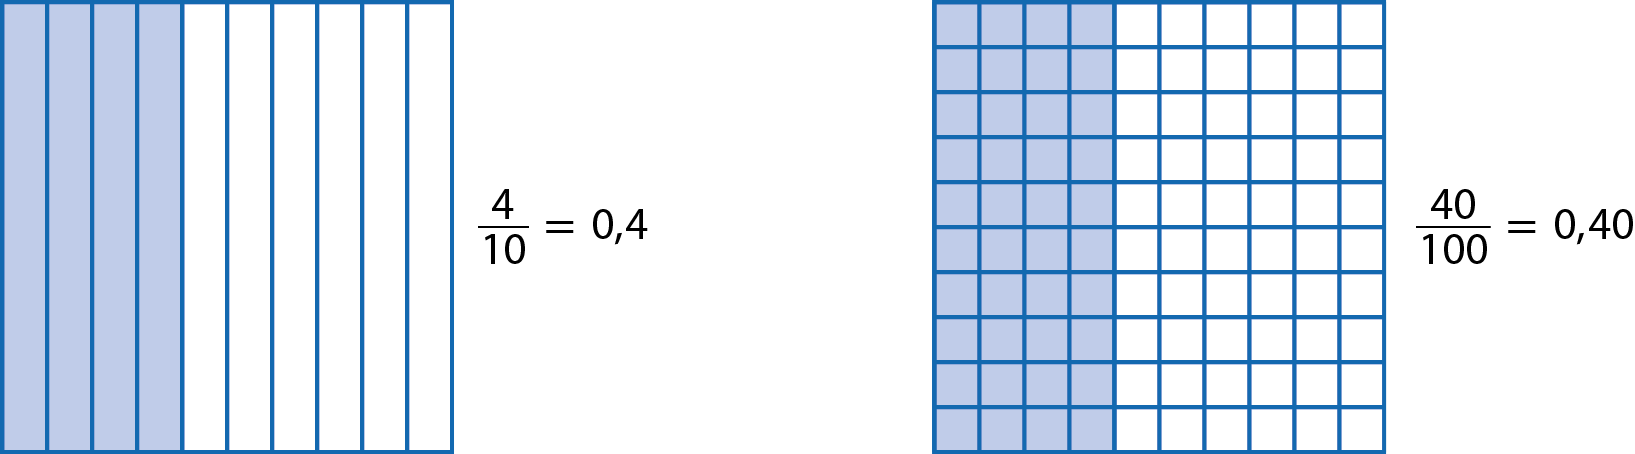 Esquema. Quadrado dividido em 10 colunas iguais, da esquerda para a direita 4 colunas são azuis. Cota na vertical indicando 4 décimos igual a 0 vírgula 4. Esquema. Quadrado dividido em 10 linhas e 10 colunas, formando 100 quadradinhos de mesmo tamanho. da esquerda para a direita 40 quadradinhos são azuis. Cota na vertical indicando 4 centésimos igual a 0 vírgula 40.